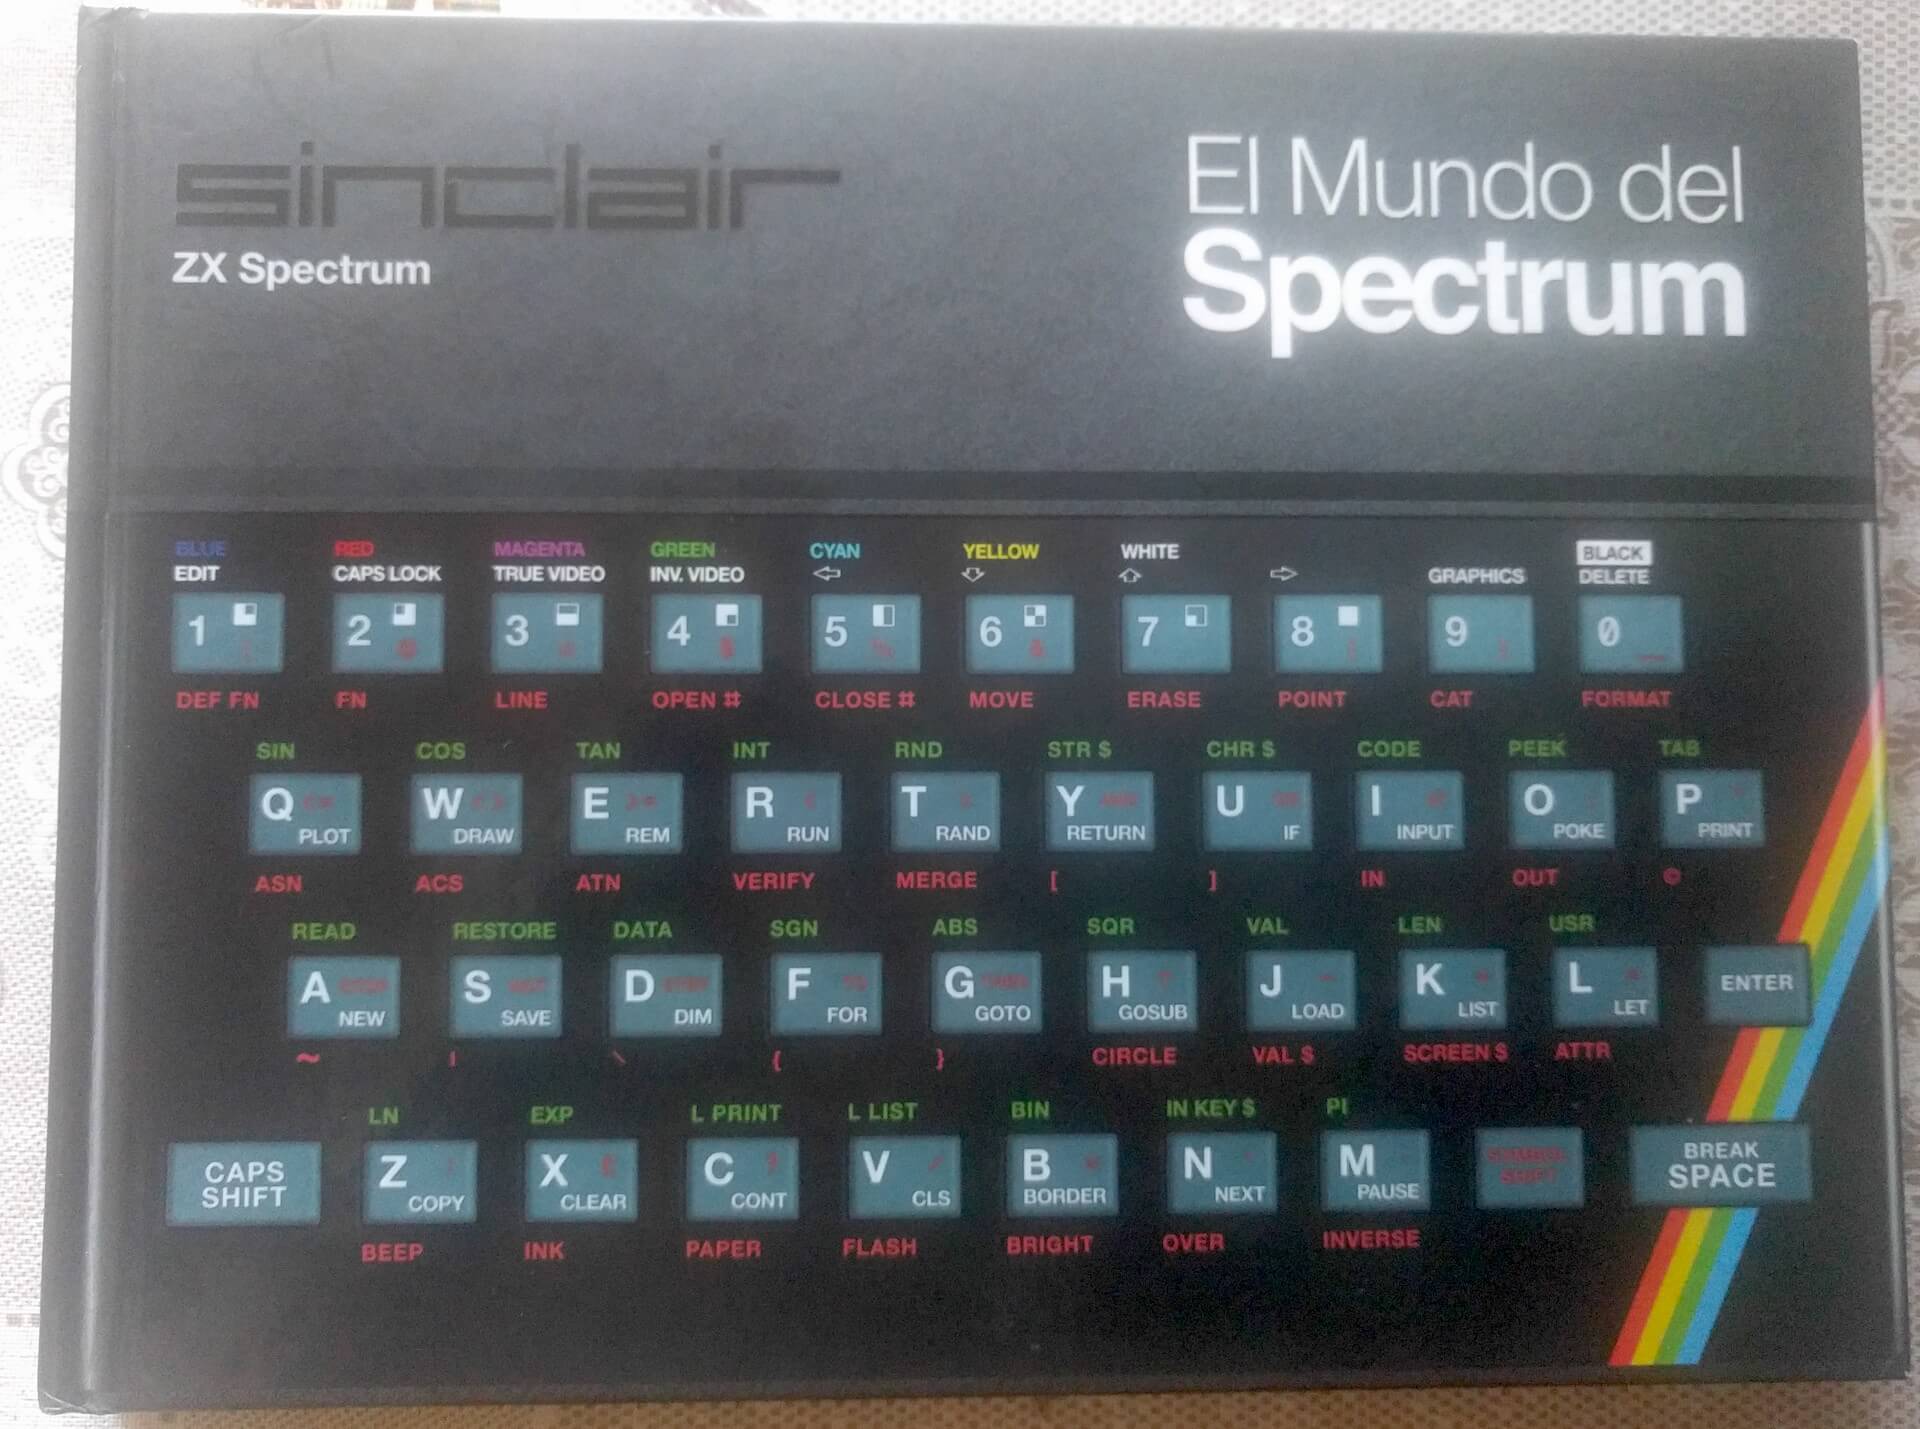 El Mundo del Spectrum